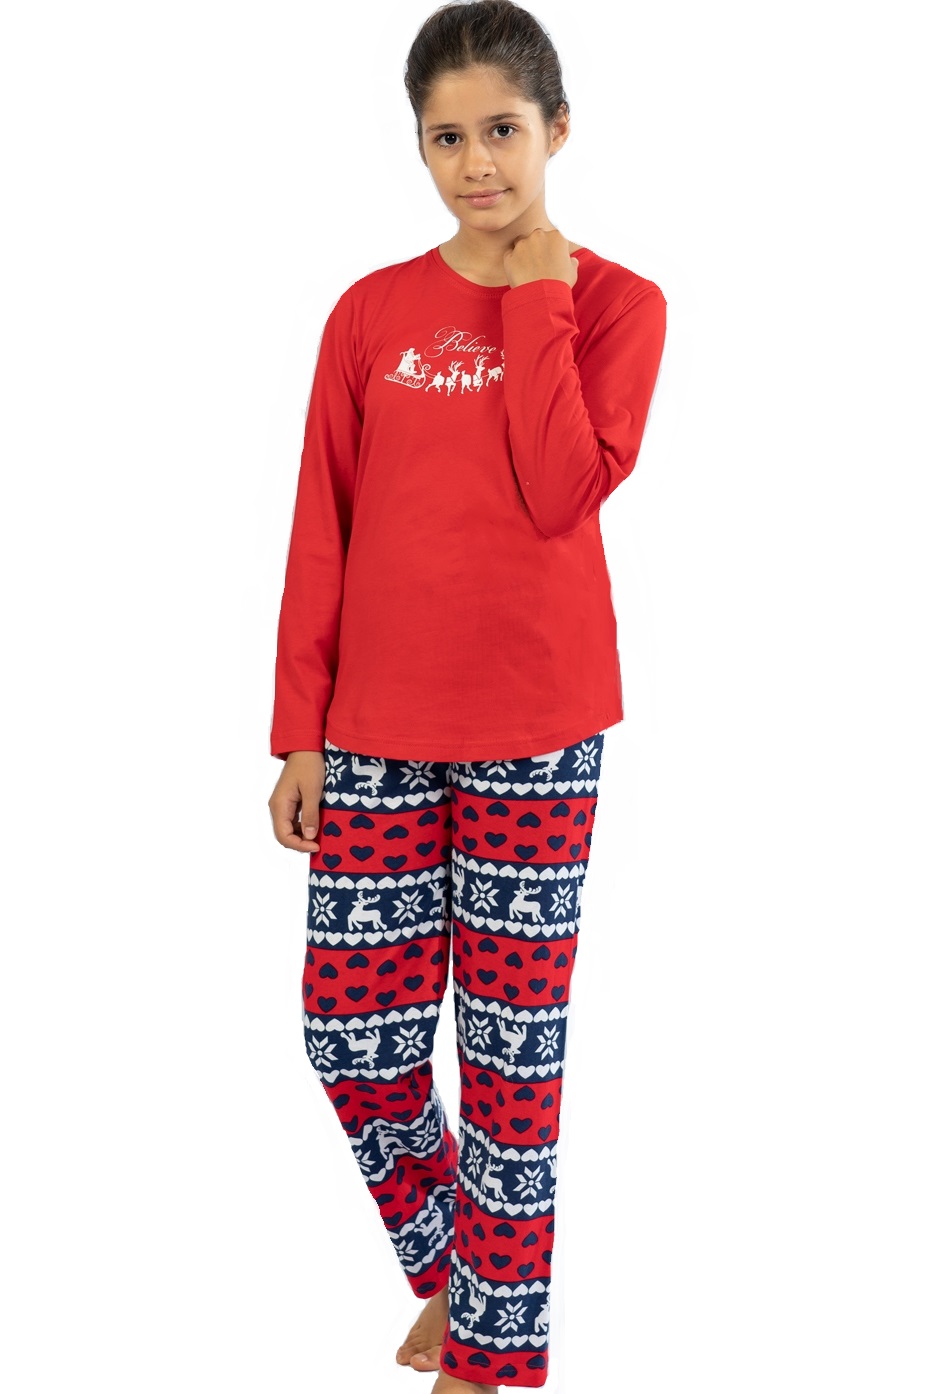 Dívčí pyžamo Santa Claus Hou Hou Hou! 1F0763